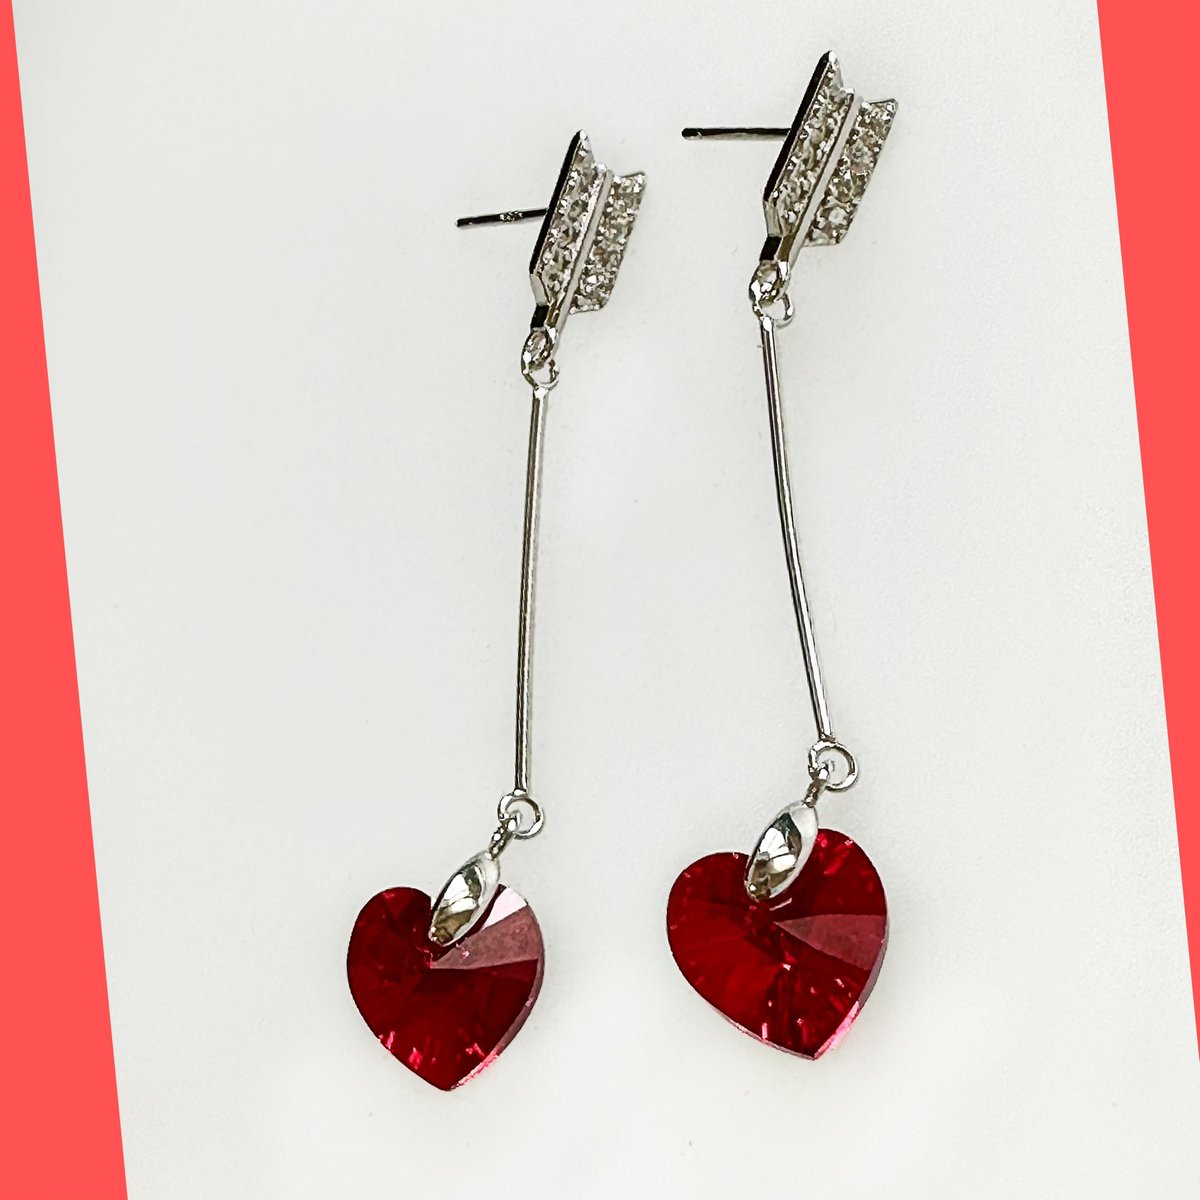 Sterling Silver Arrow Earring Studs with Red Swarovski Heart Crystal.  #swarovskiheartearrings #arrowearrings #sterlingsilverarrowearrings #silverarrowheartstuds #marjancreations